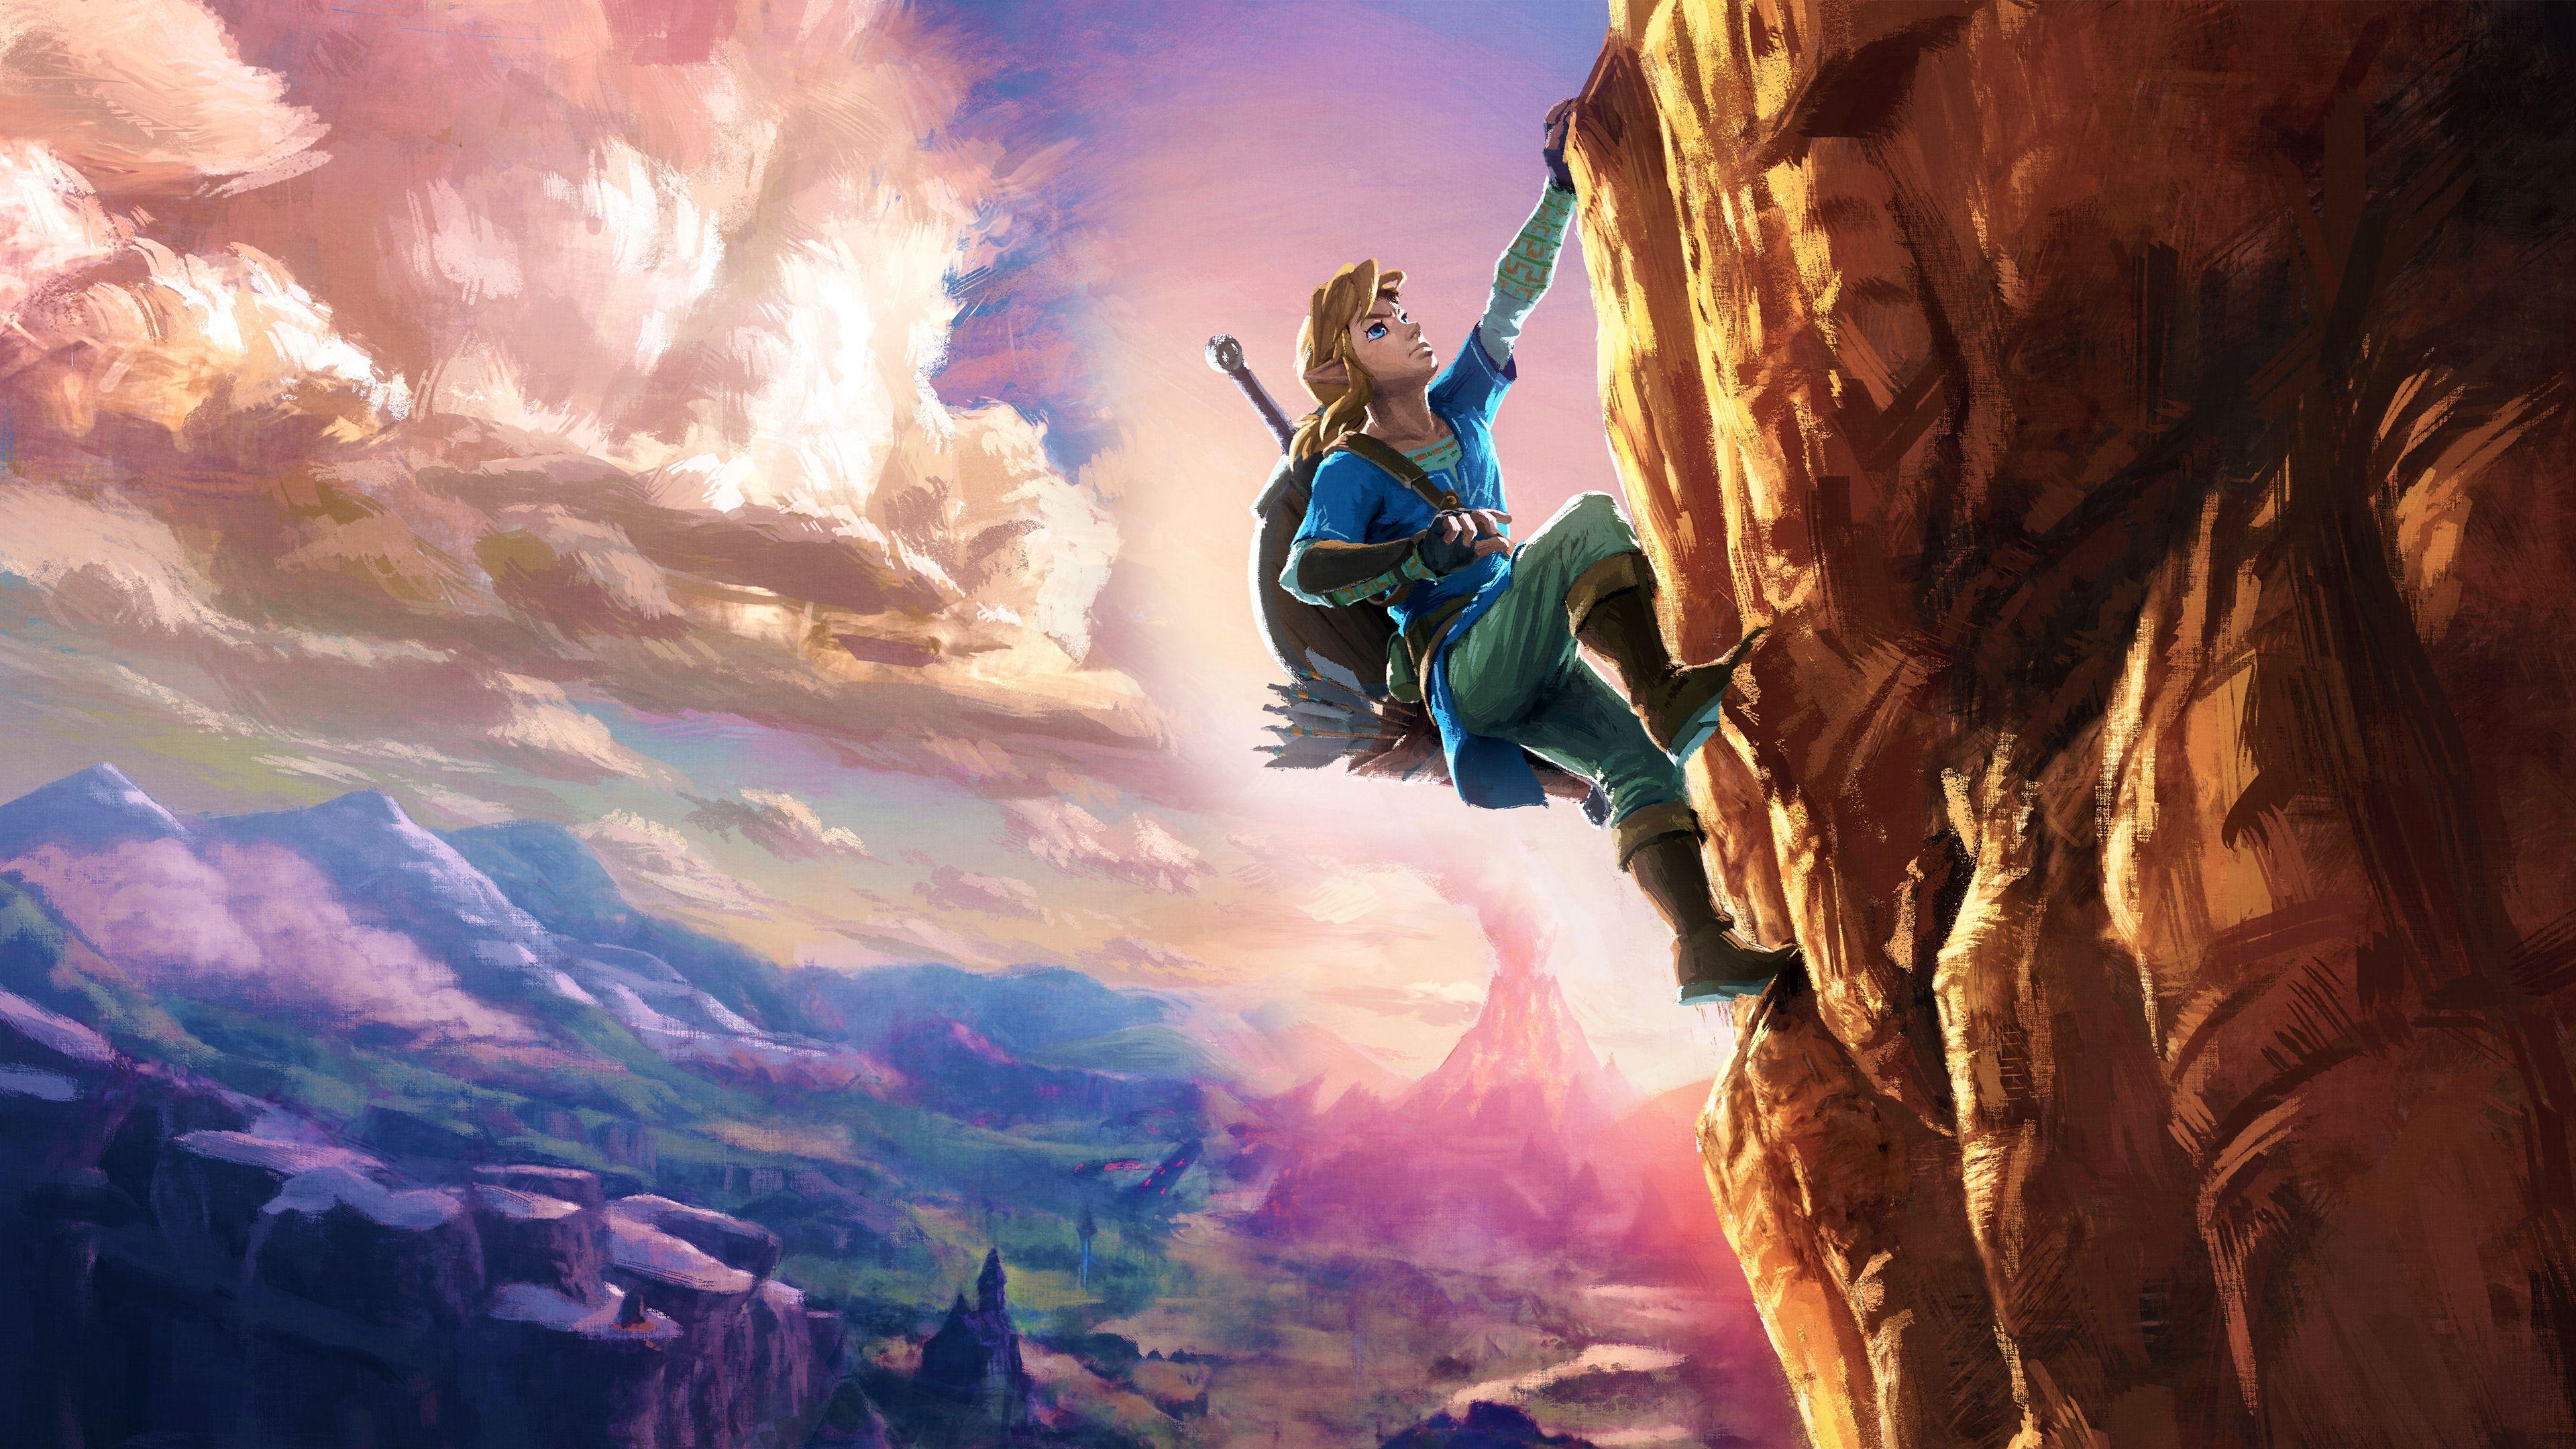 Zelda Breath Of The Wild Wallpapers Top Free Zelda Breath Of The Wild Backgrounds Wallpaperaccess